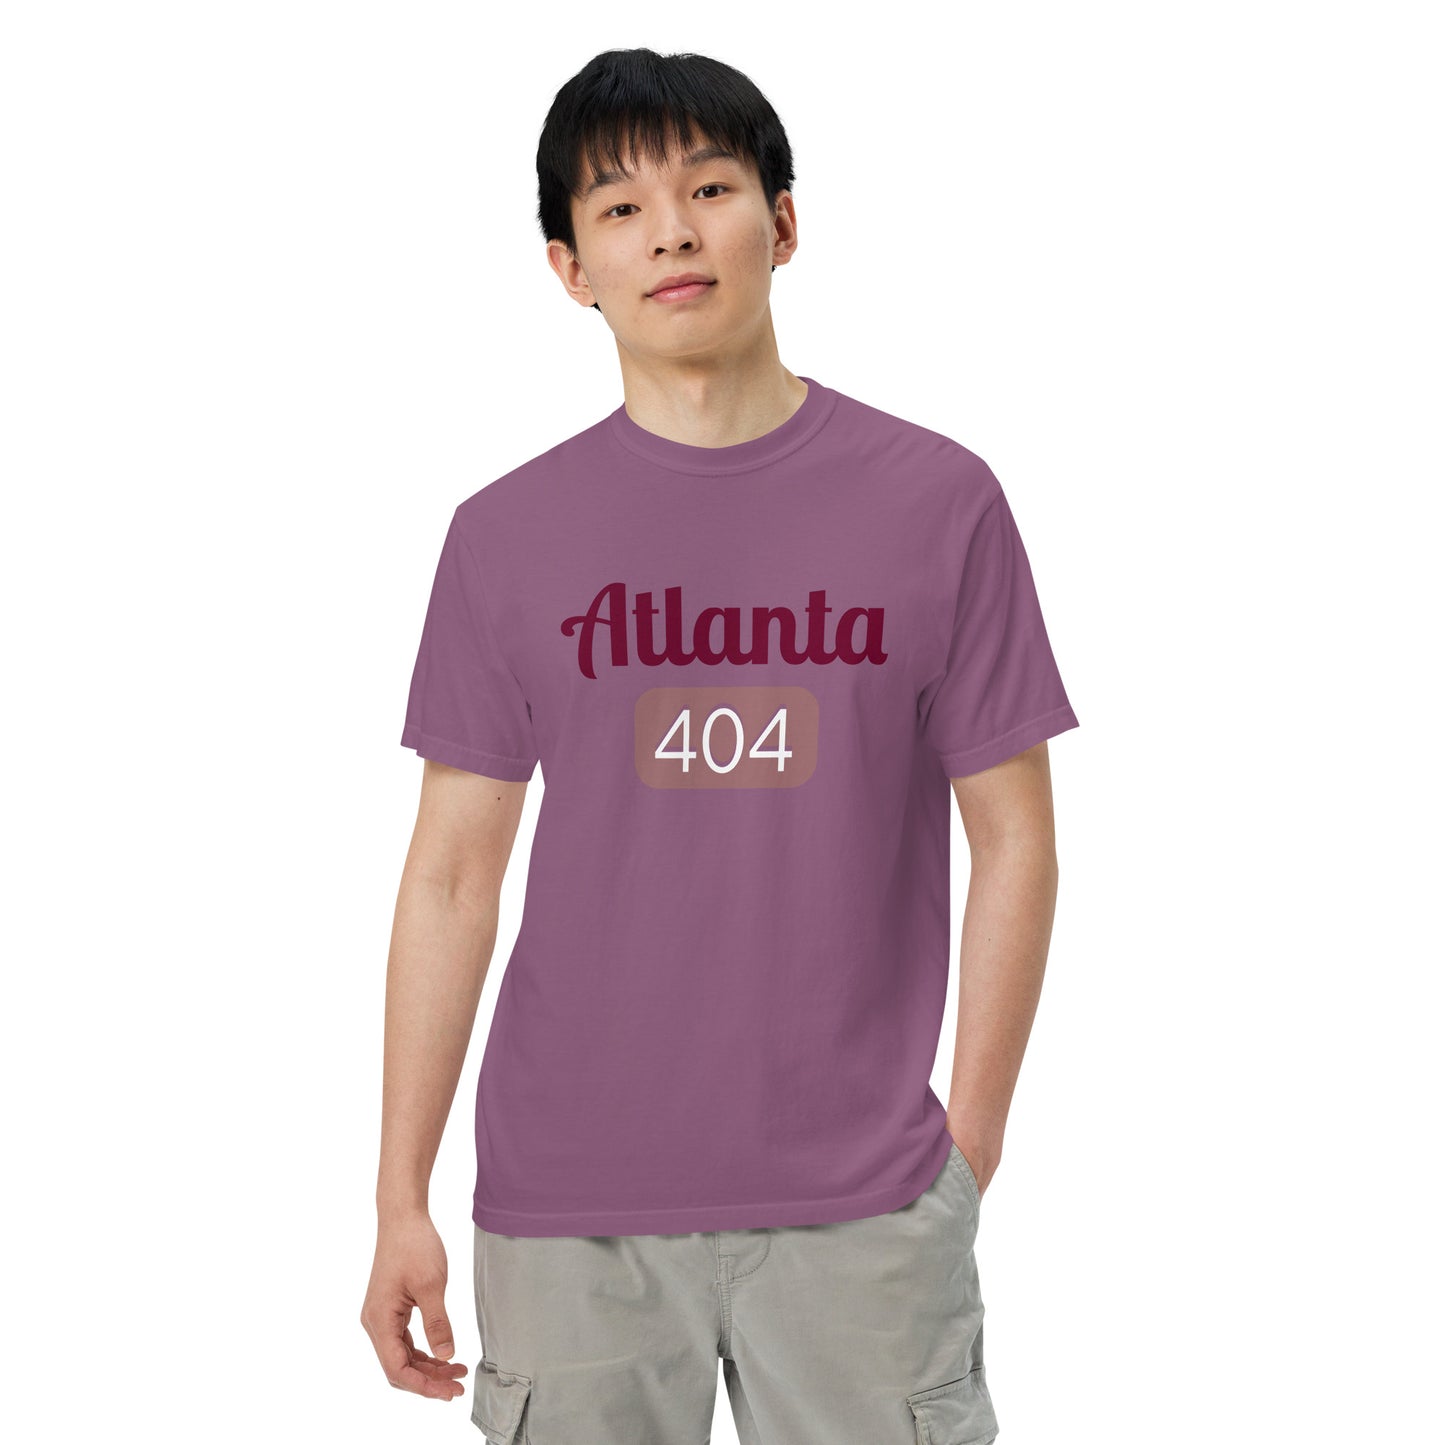 Atlanta 404 t-shirt in berry color